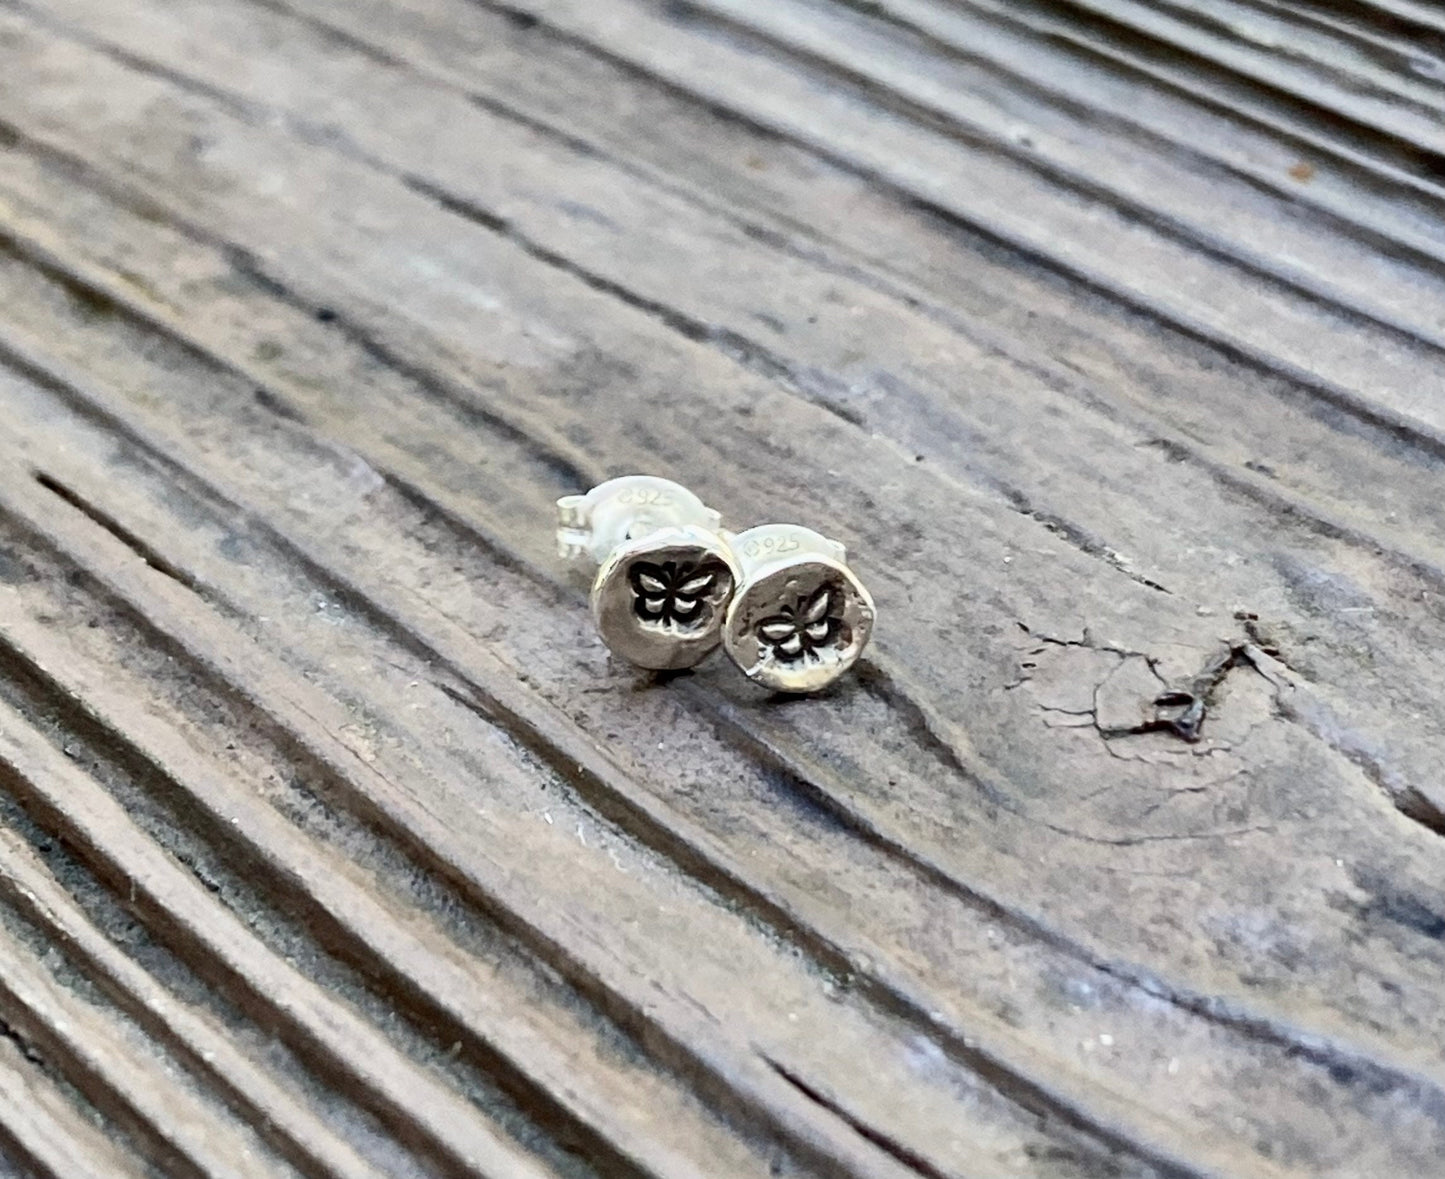 Butterfly Stud Earrings in Sterling Silver